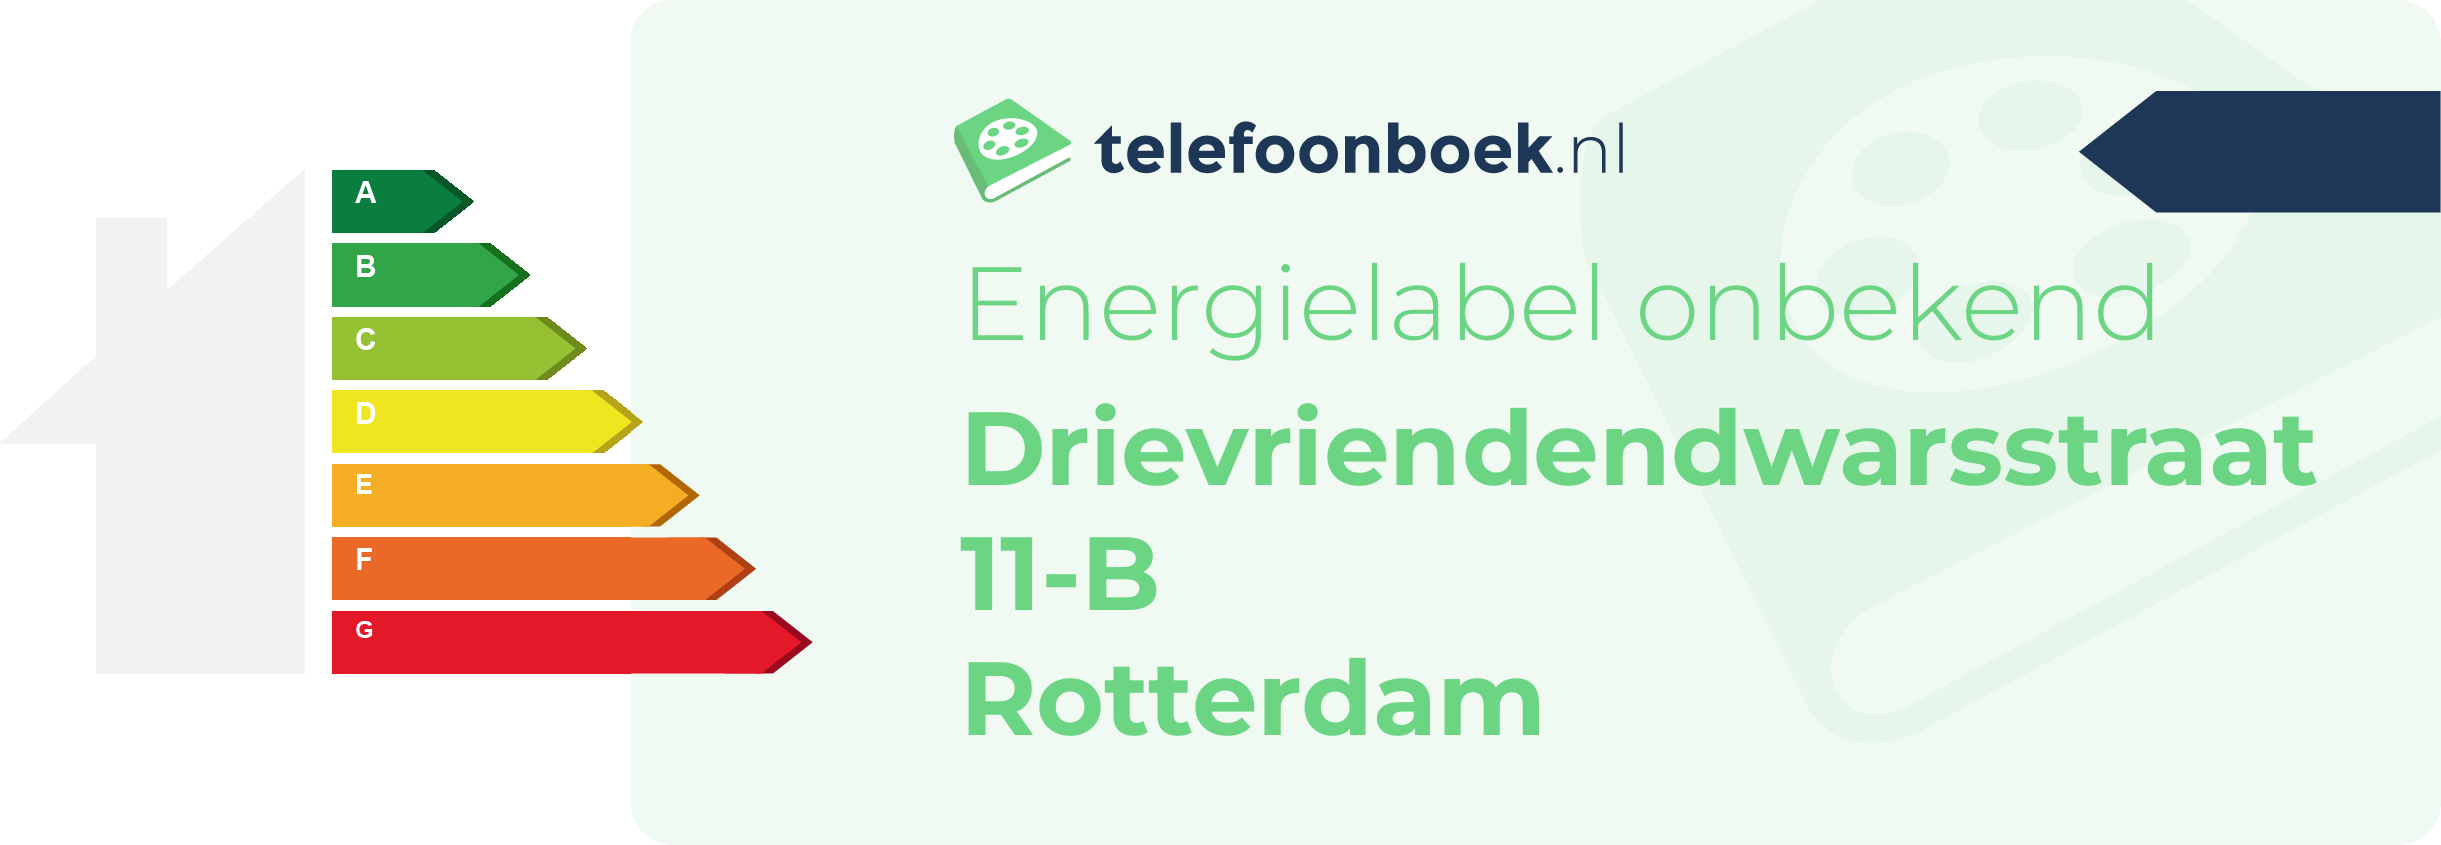 Energielabel Drievriendendwarsstraat 11-B Rotterdam